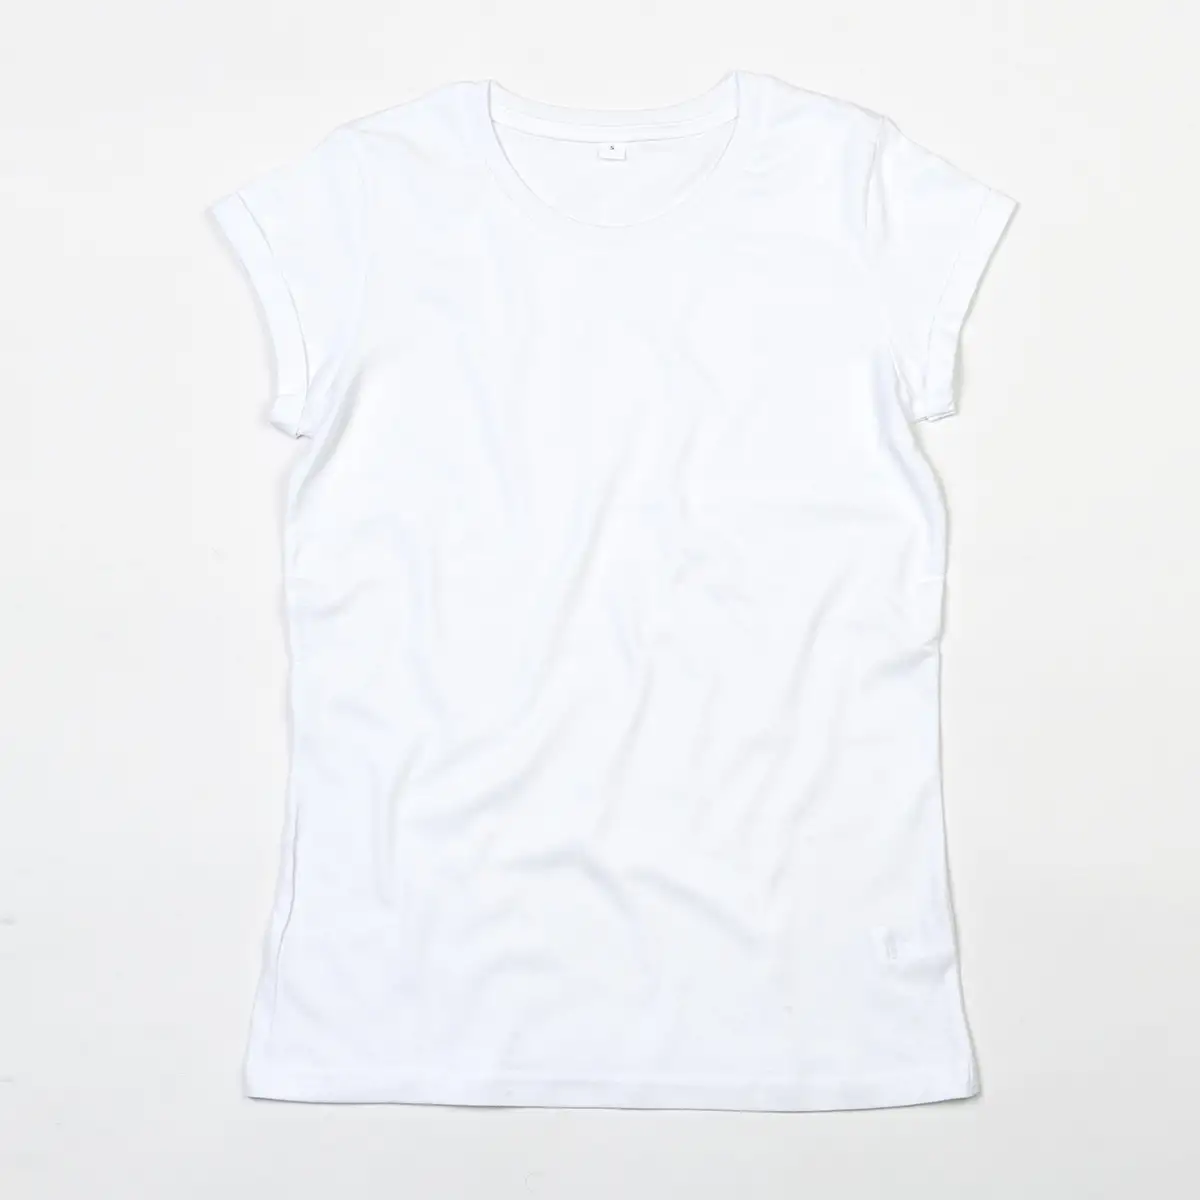 T-shirt Women's Roll Sleeve T